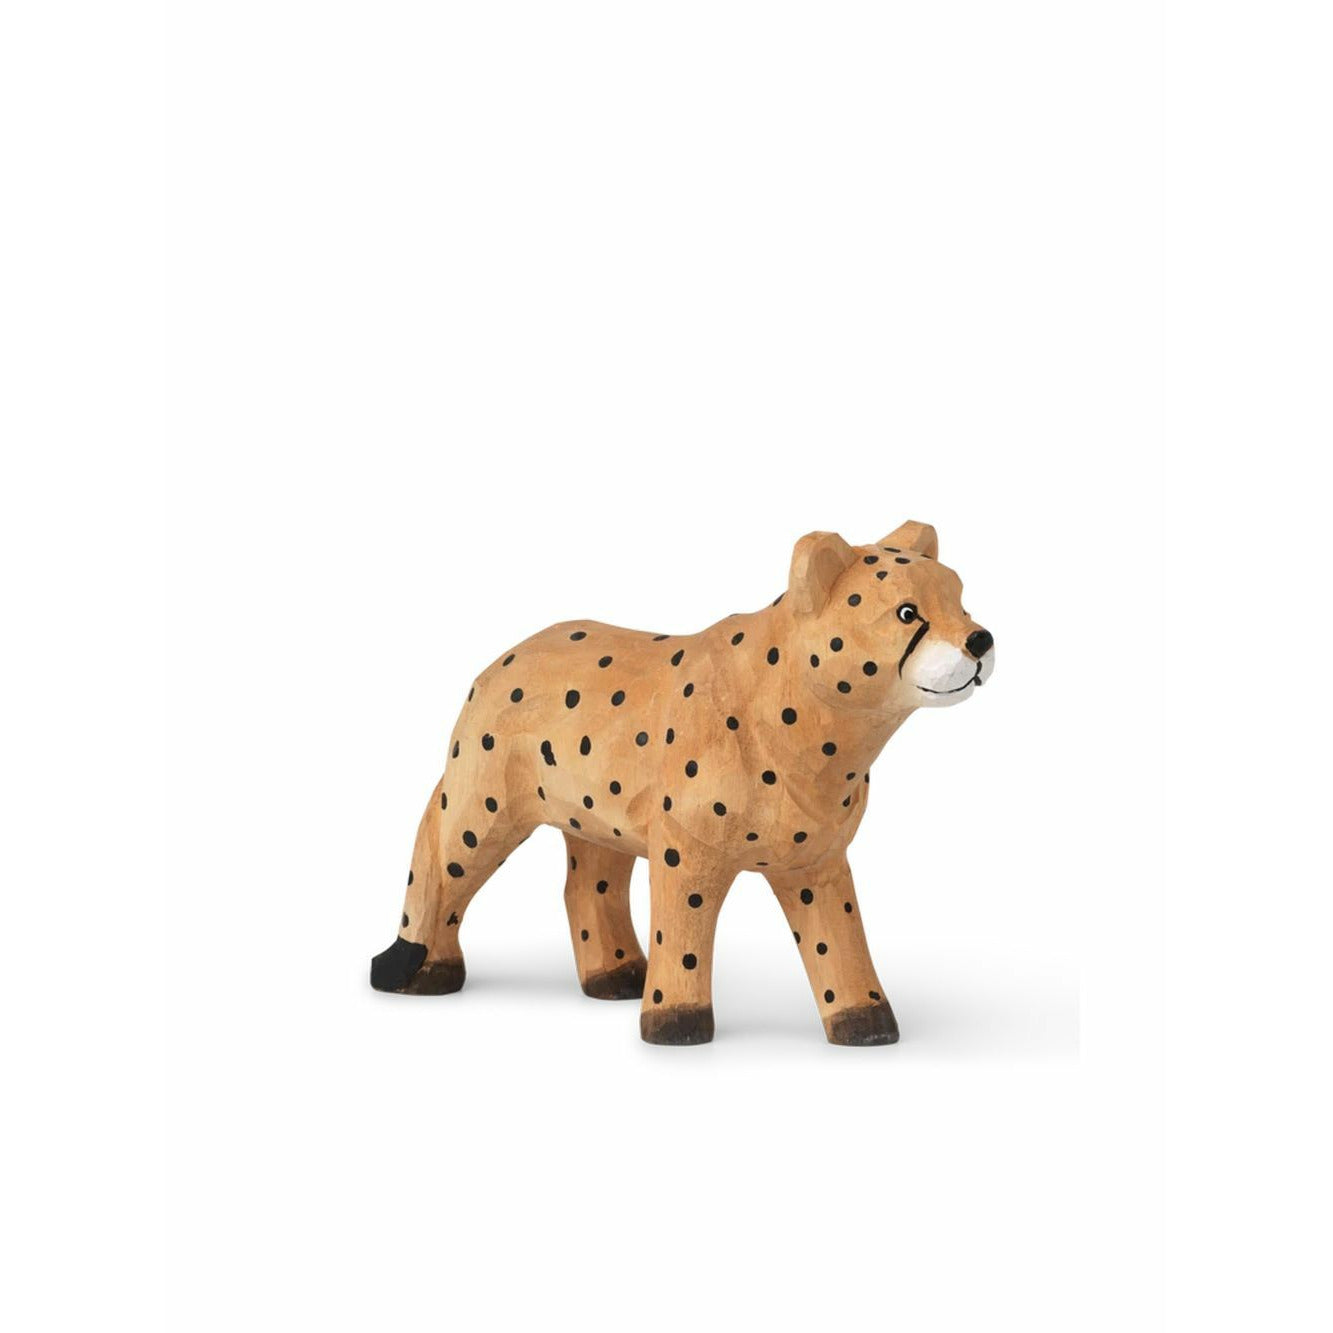 Ferm de animal vivo a mano tallada, guepardo